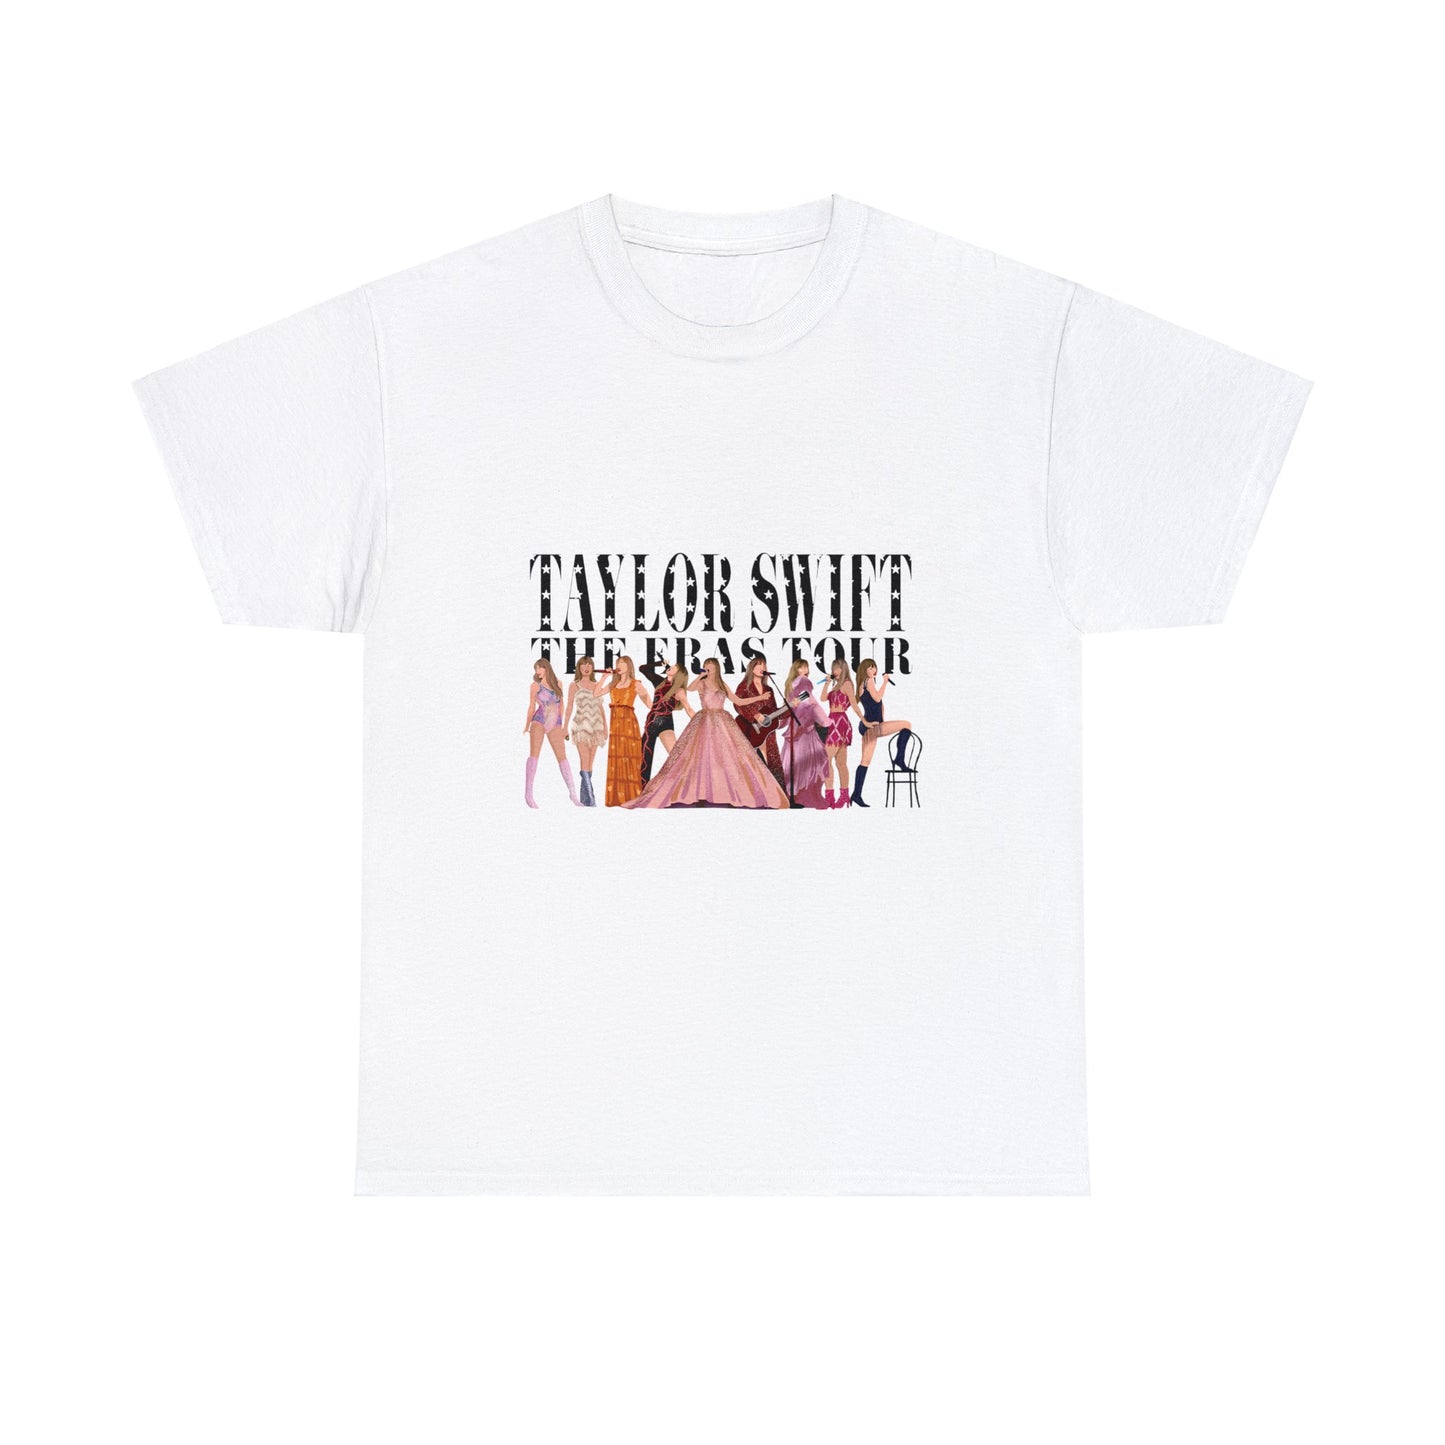 Taylor Swift Era's Lineup T-Shirt